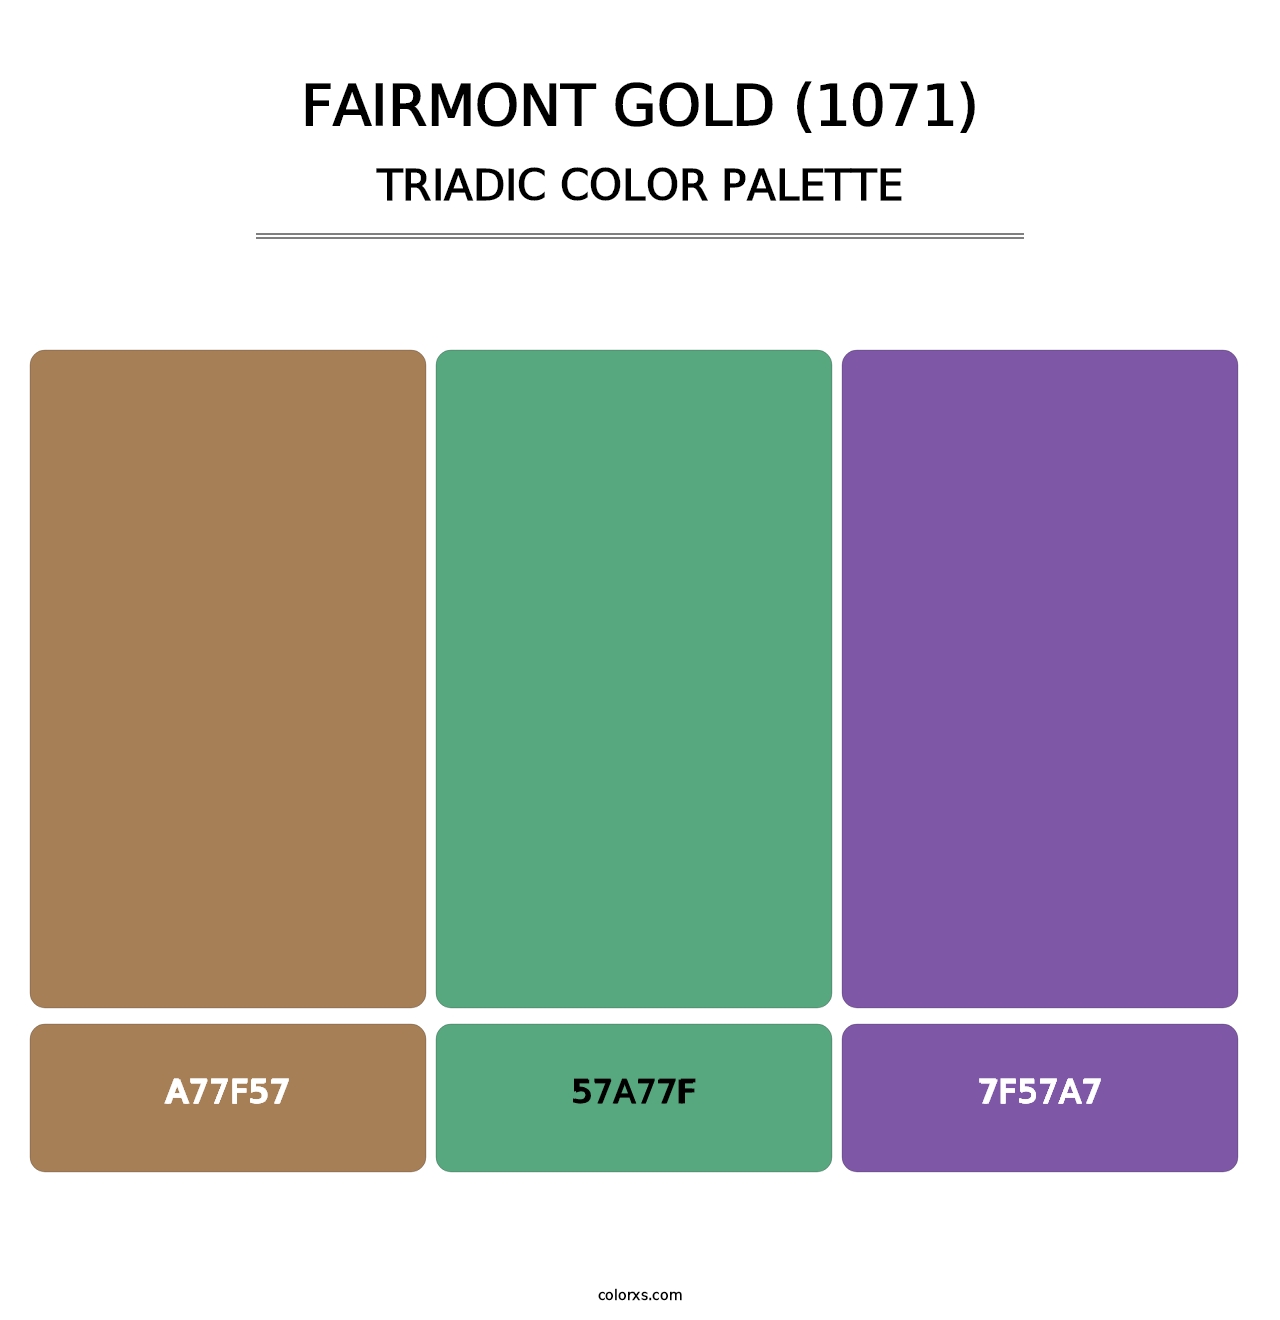 Fairmont Gold (1071) - Triadic Color Palette